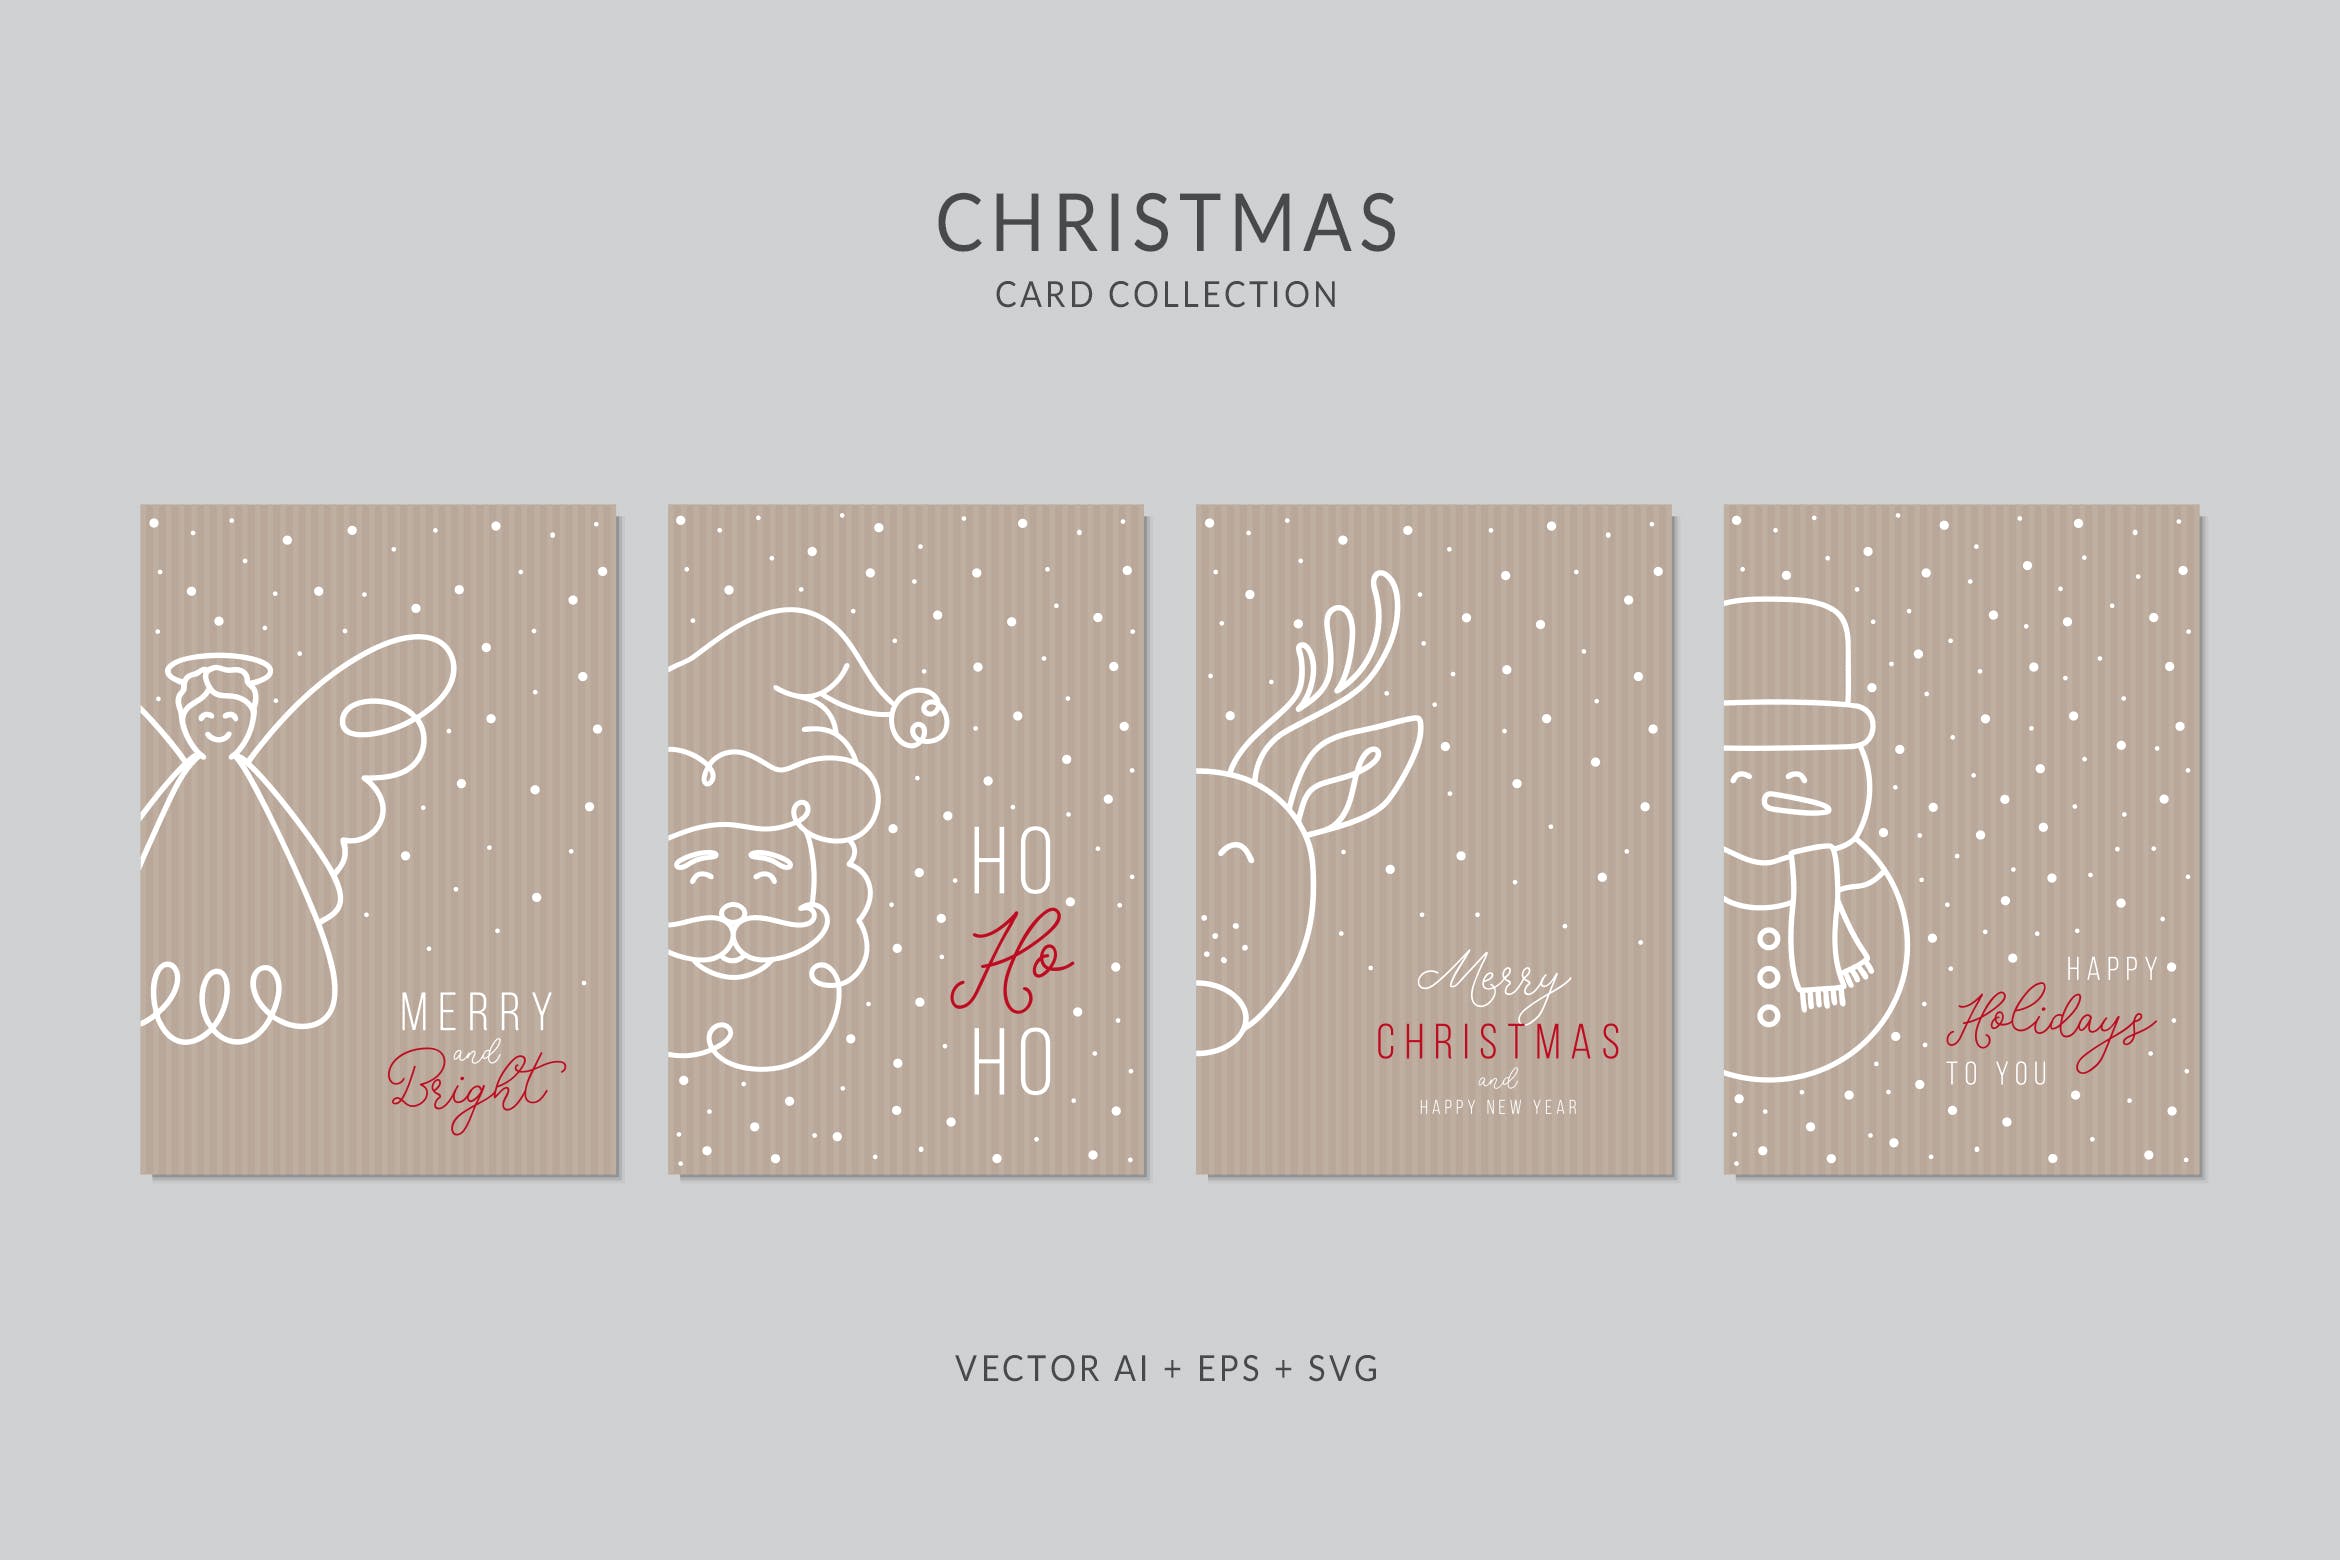 简笔画艺术风格圣诞节贺卡矢量设计模板集v5 Christmas Greeting Card Vector Set插图